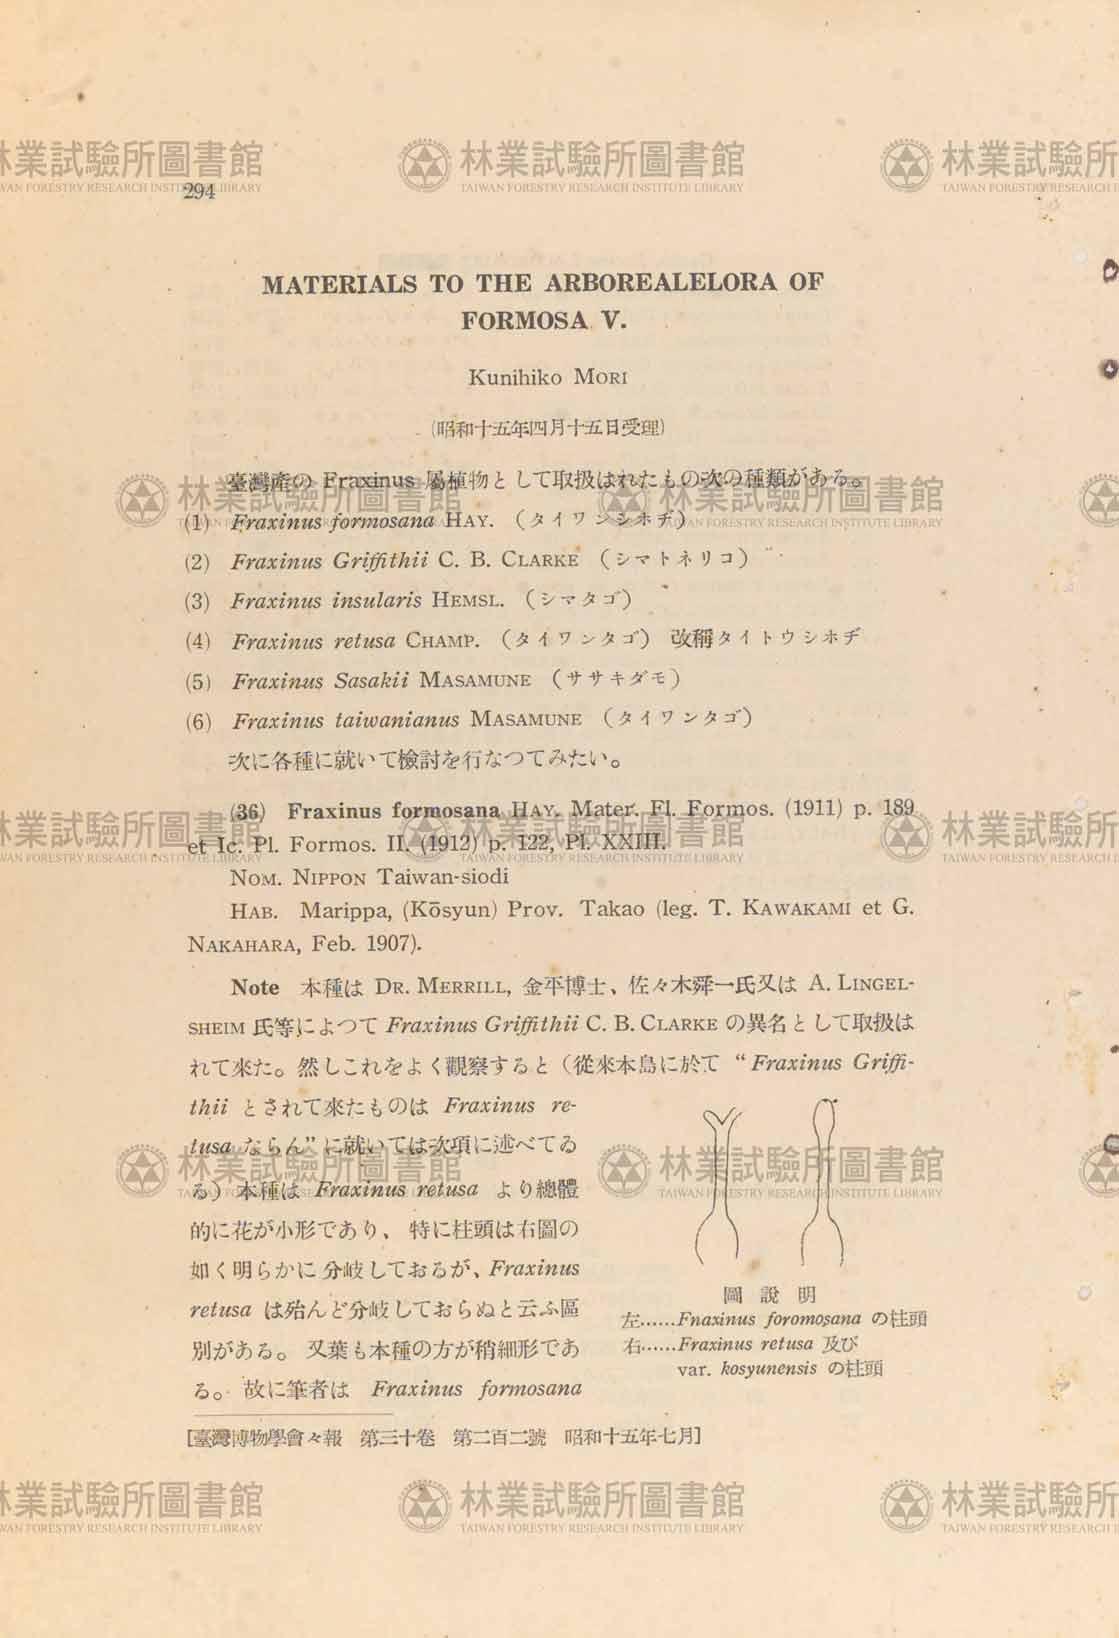 篇名:Materials to the arboreal flora of Formosa V.